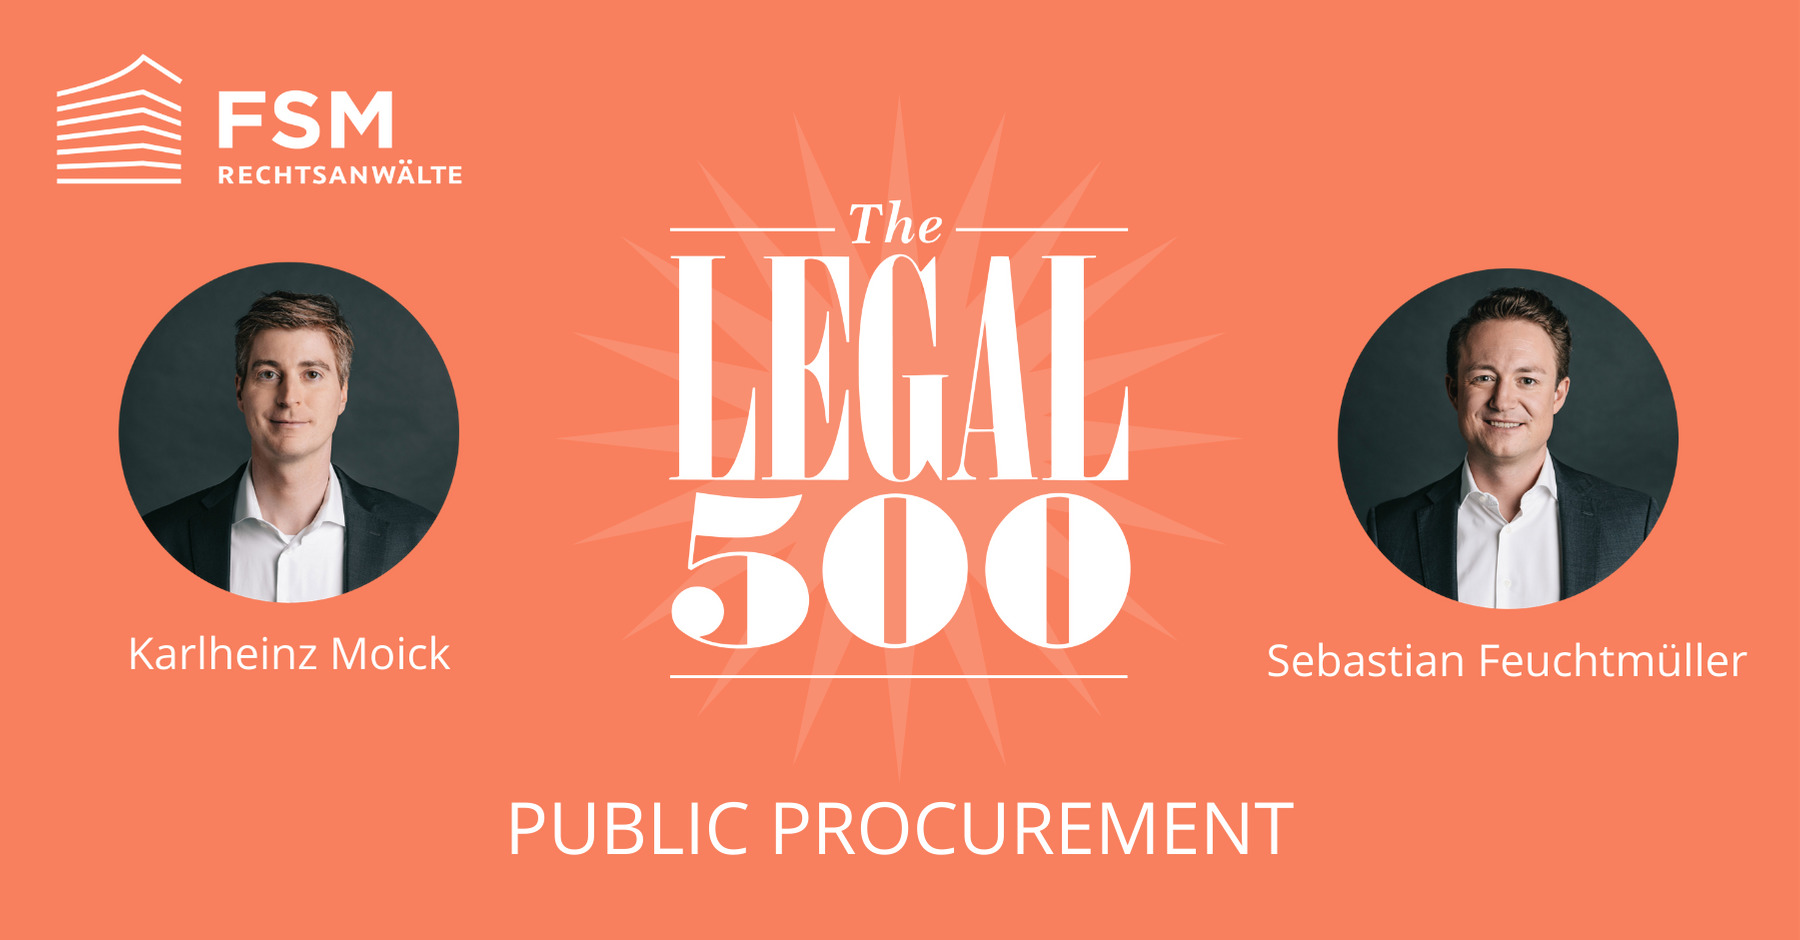 FSM_Legal500_PublicProcurement_2021